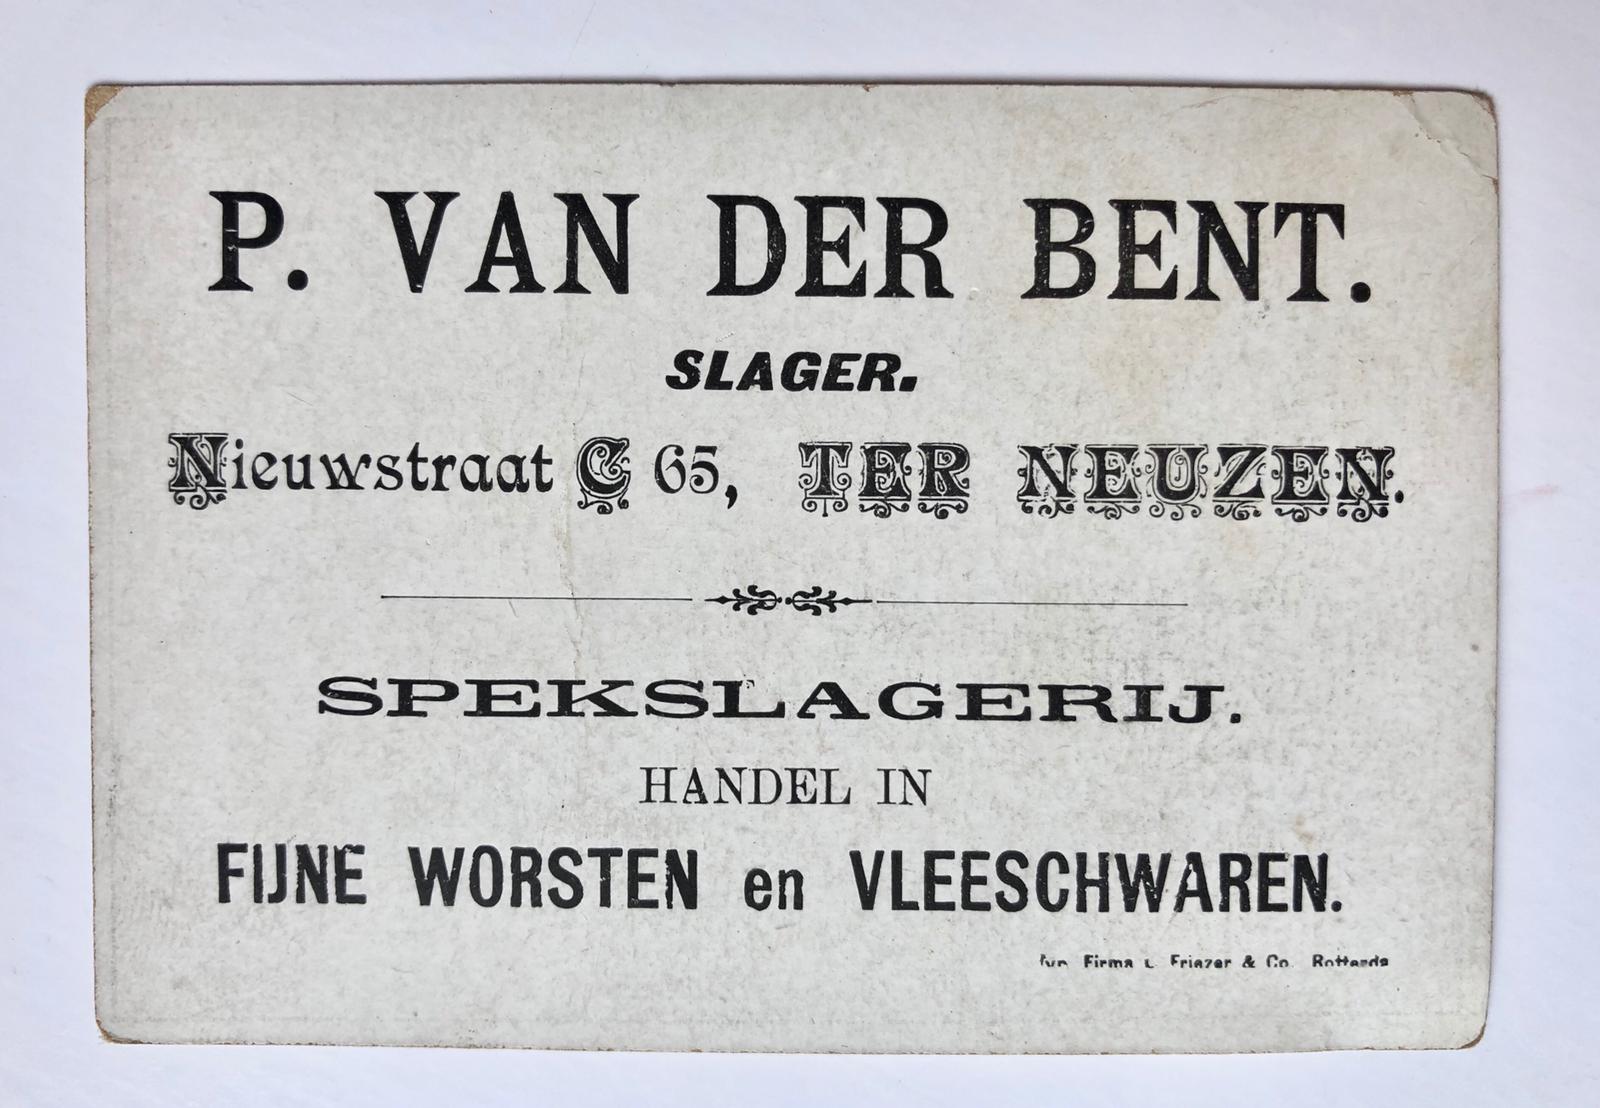 [Address card, butcher] Adreskaartje voor slagerij P. van der Bent te Terneuzen, gedrukt.